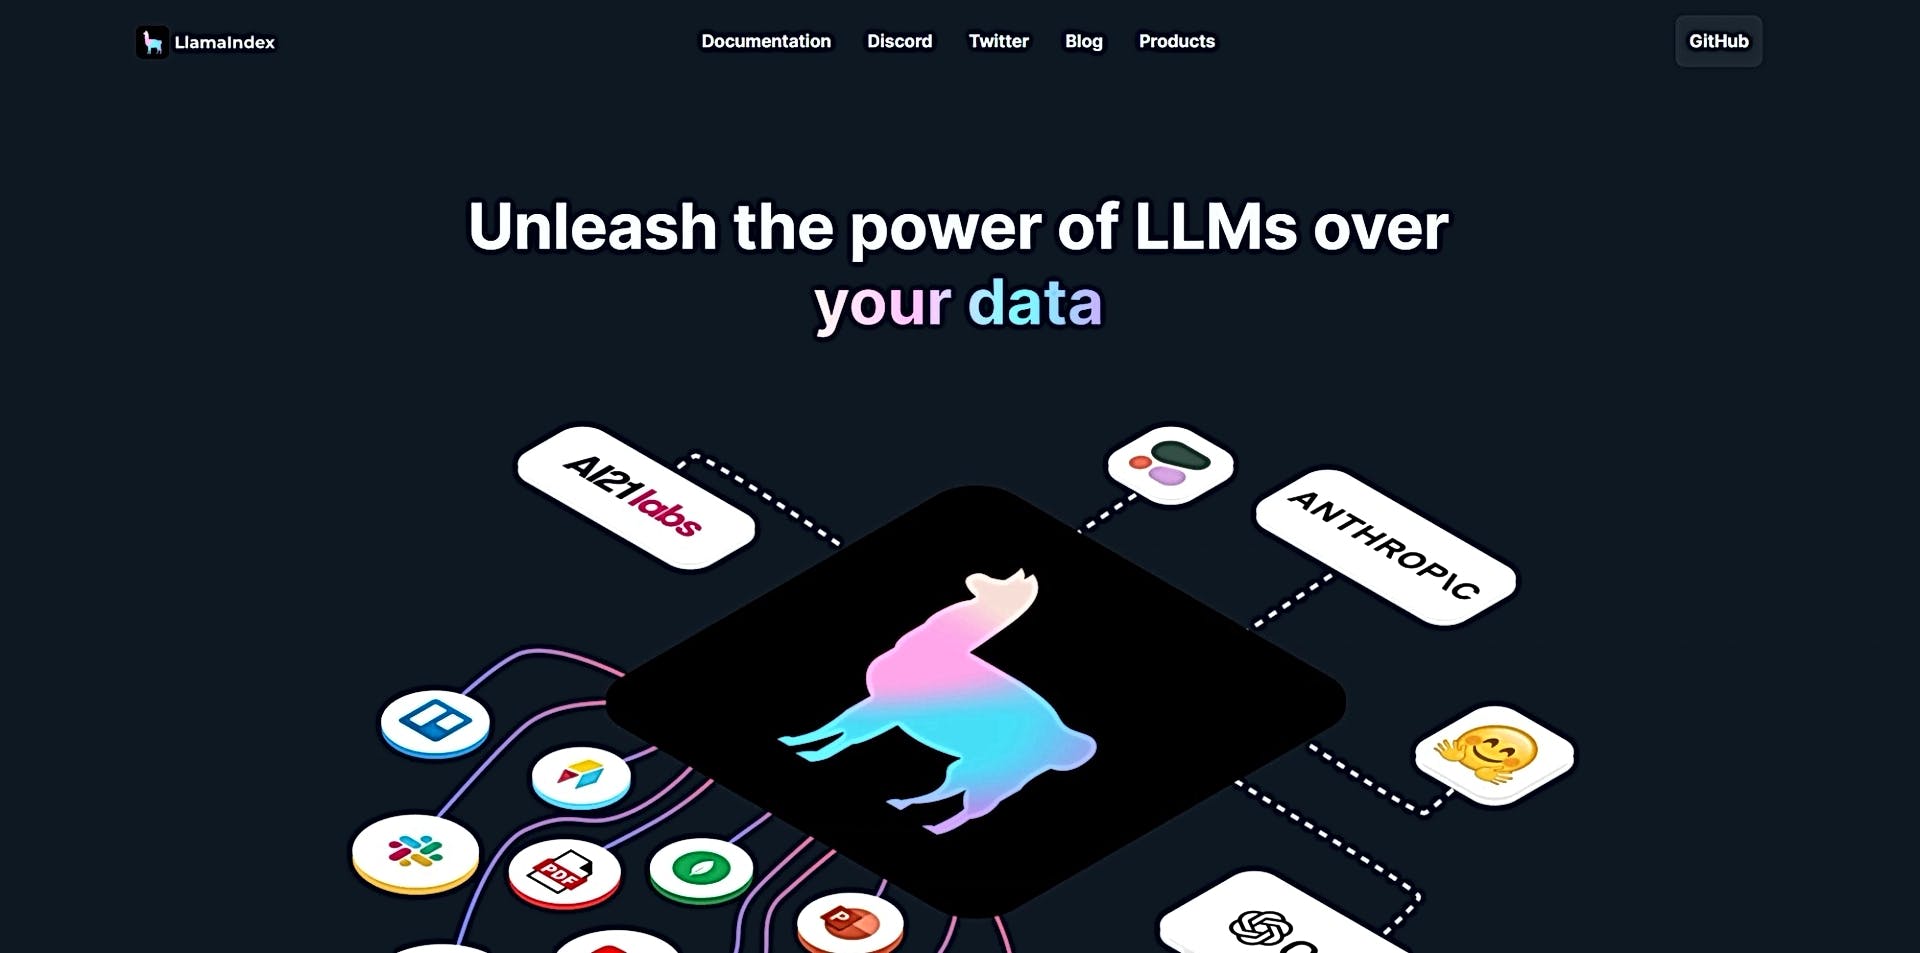 LlamaIndex featured